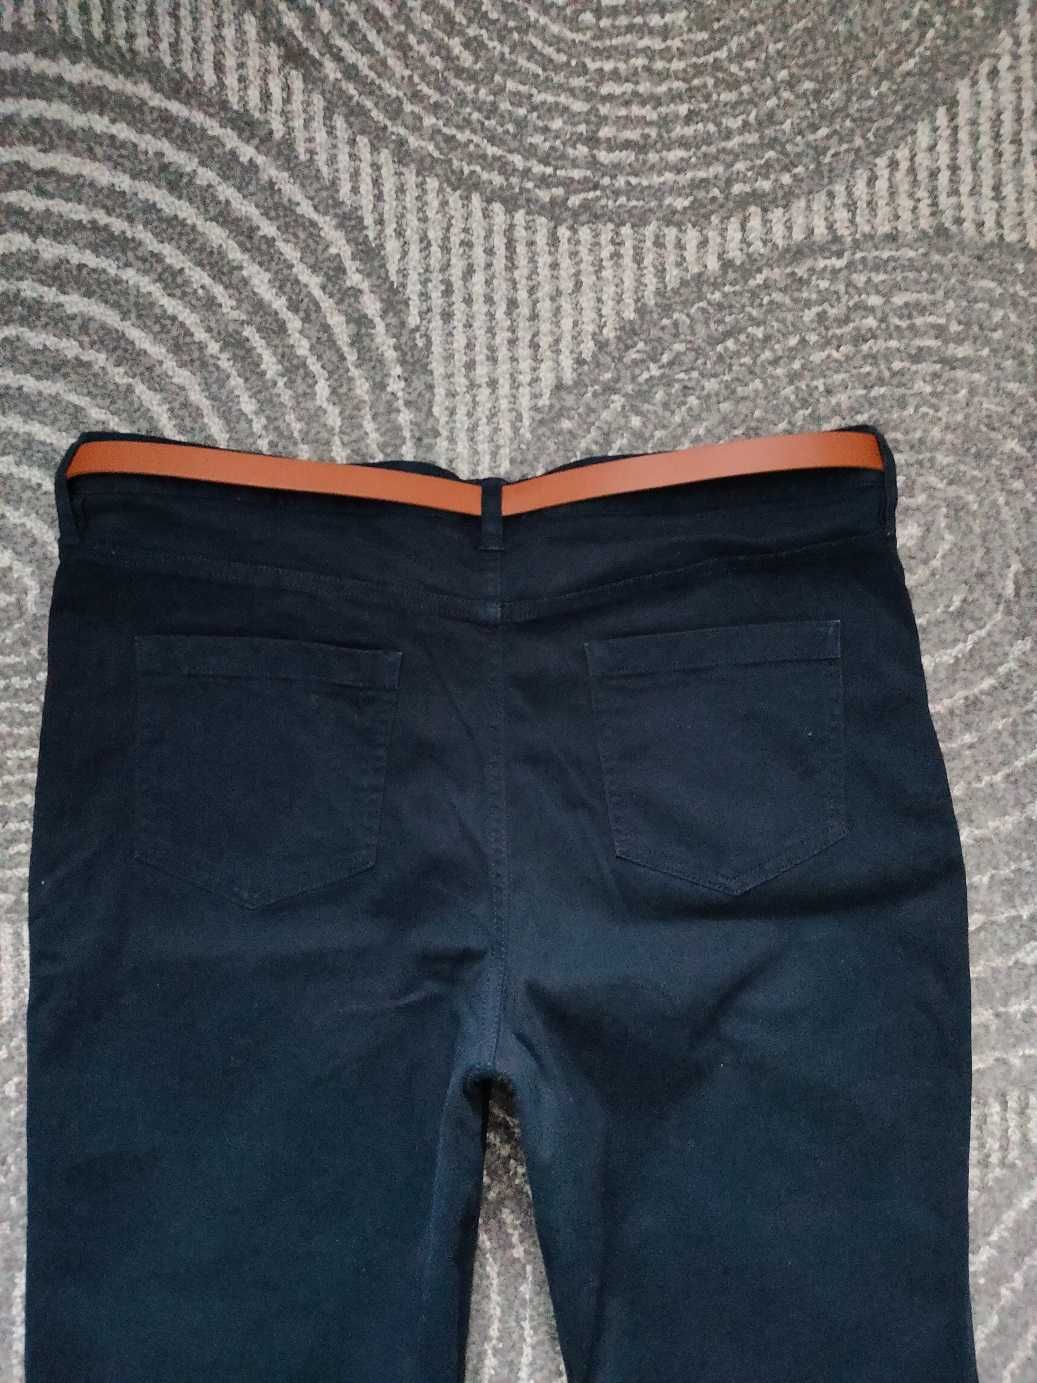 F&F spodnie klasyczne materiałowe z paskiem rozmiar 44 jak nowe